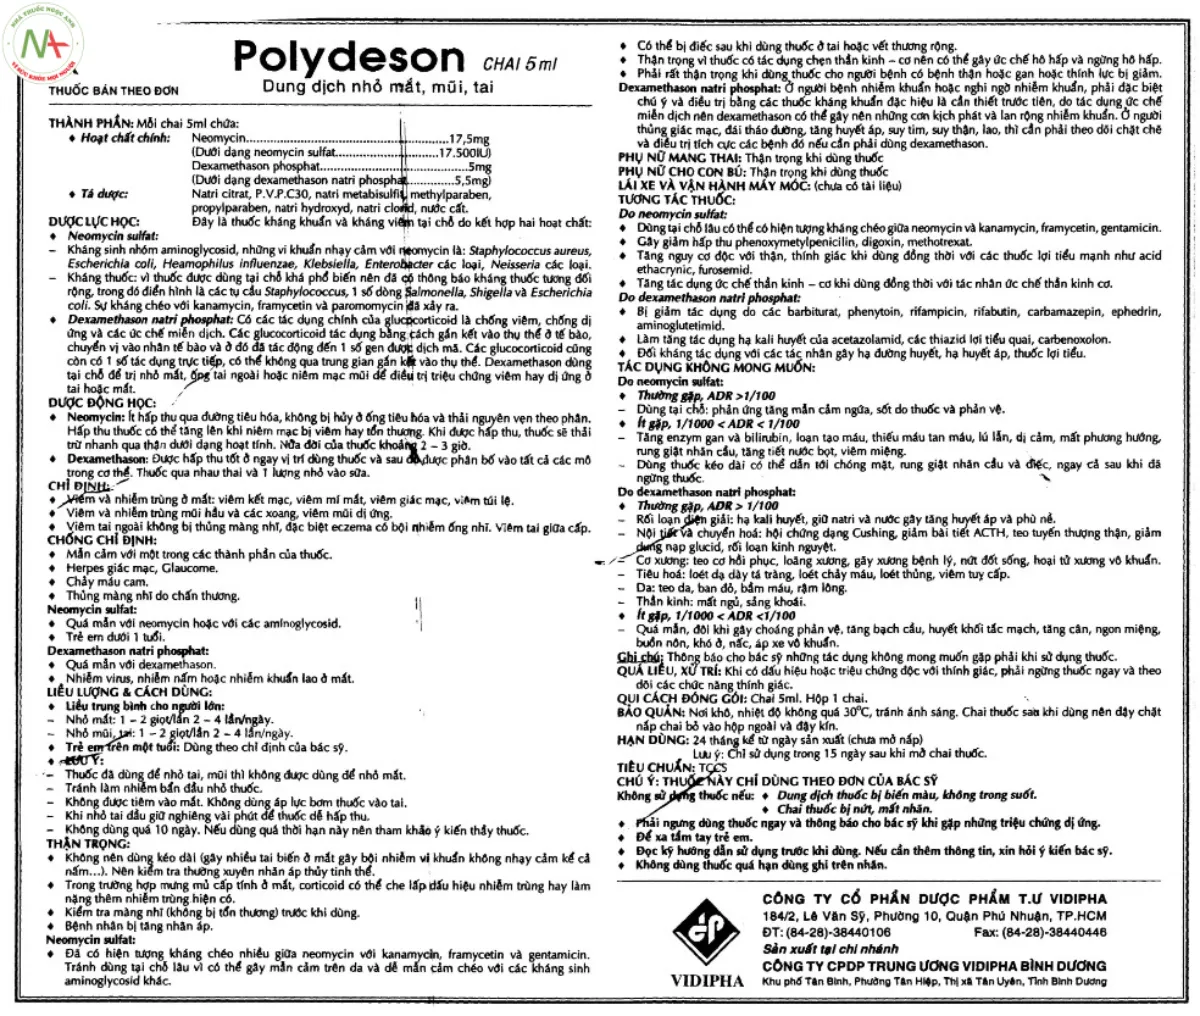 Hướng dẫn sử dụng thuốc Polydeson 5ml